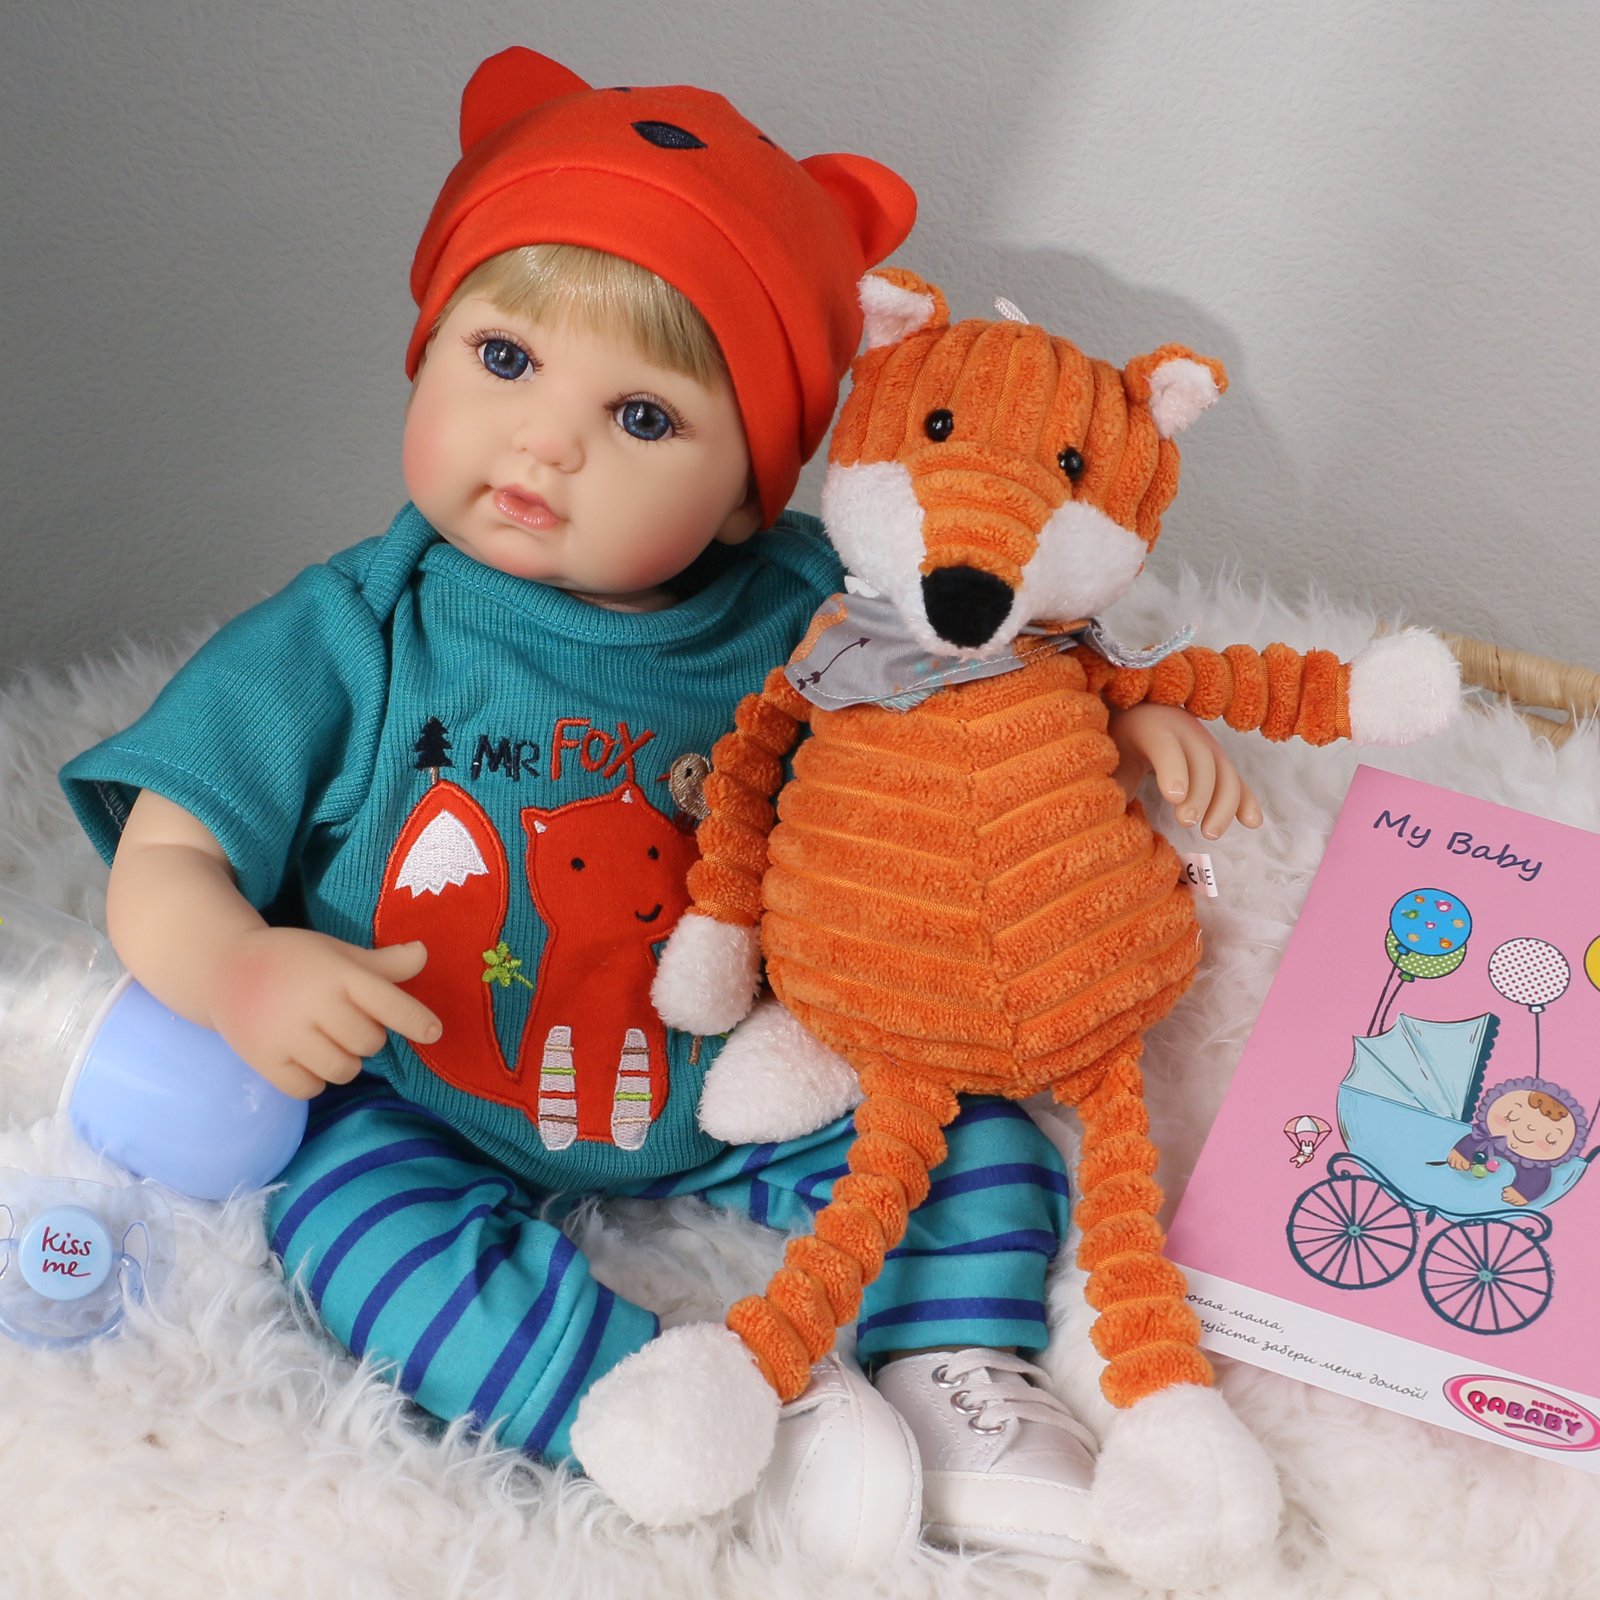 Кукла Реборн QA BABY Мишель мальчик большой пупс набор игрушки для девочки 42 см 45001 - фото 3